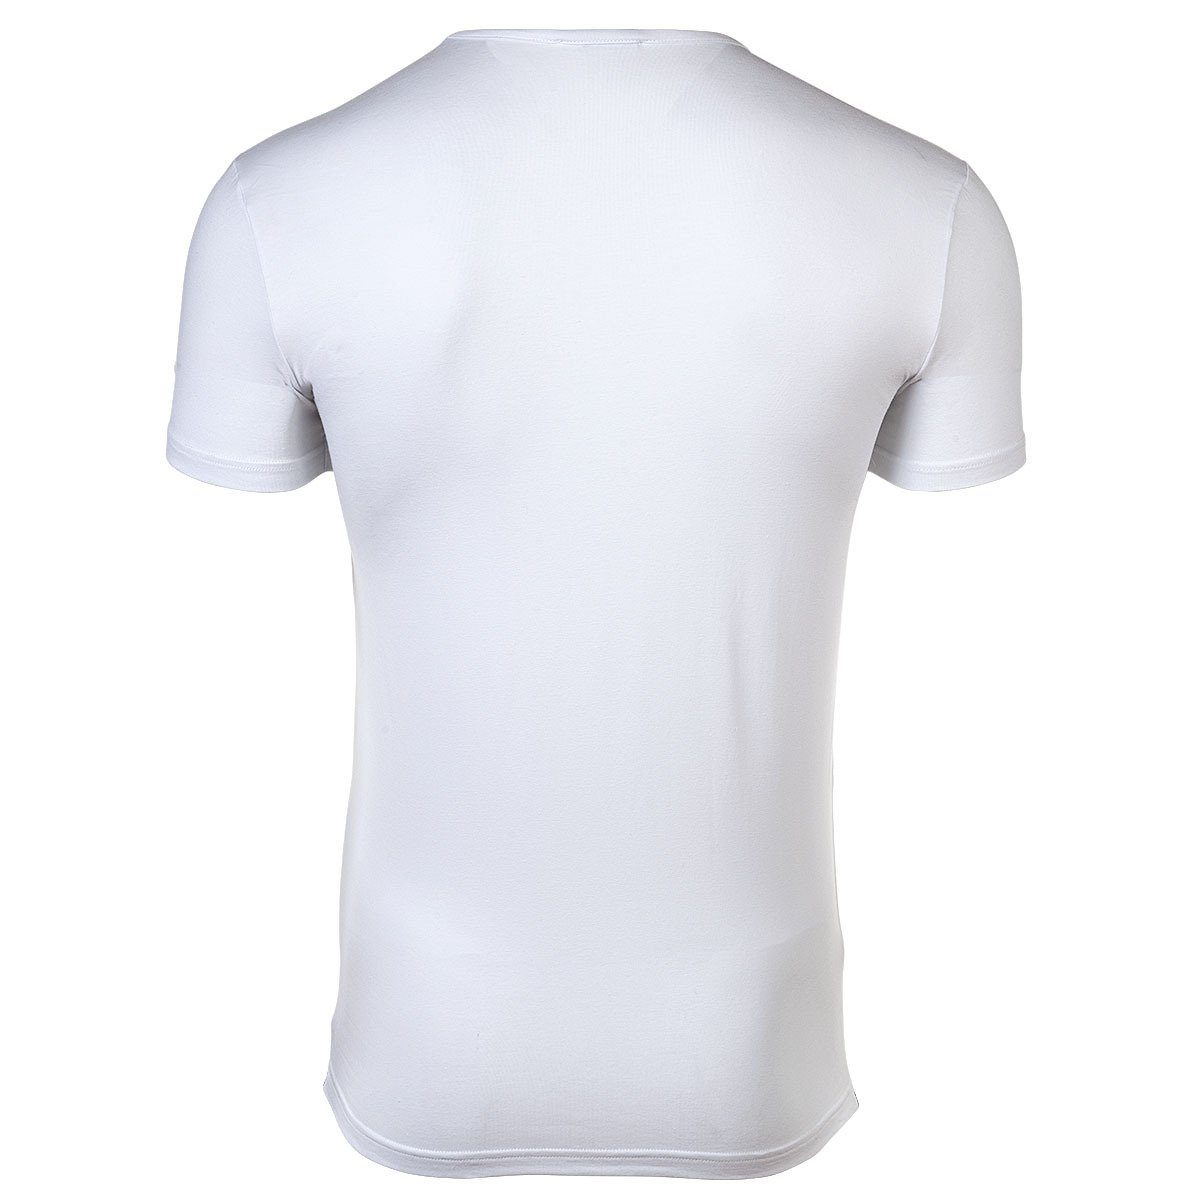 - Versace Herren Weiß T-Shirt Unterhemd, Rundhals, Stretch T-Shirt